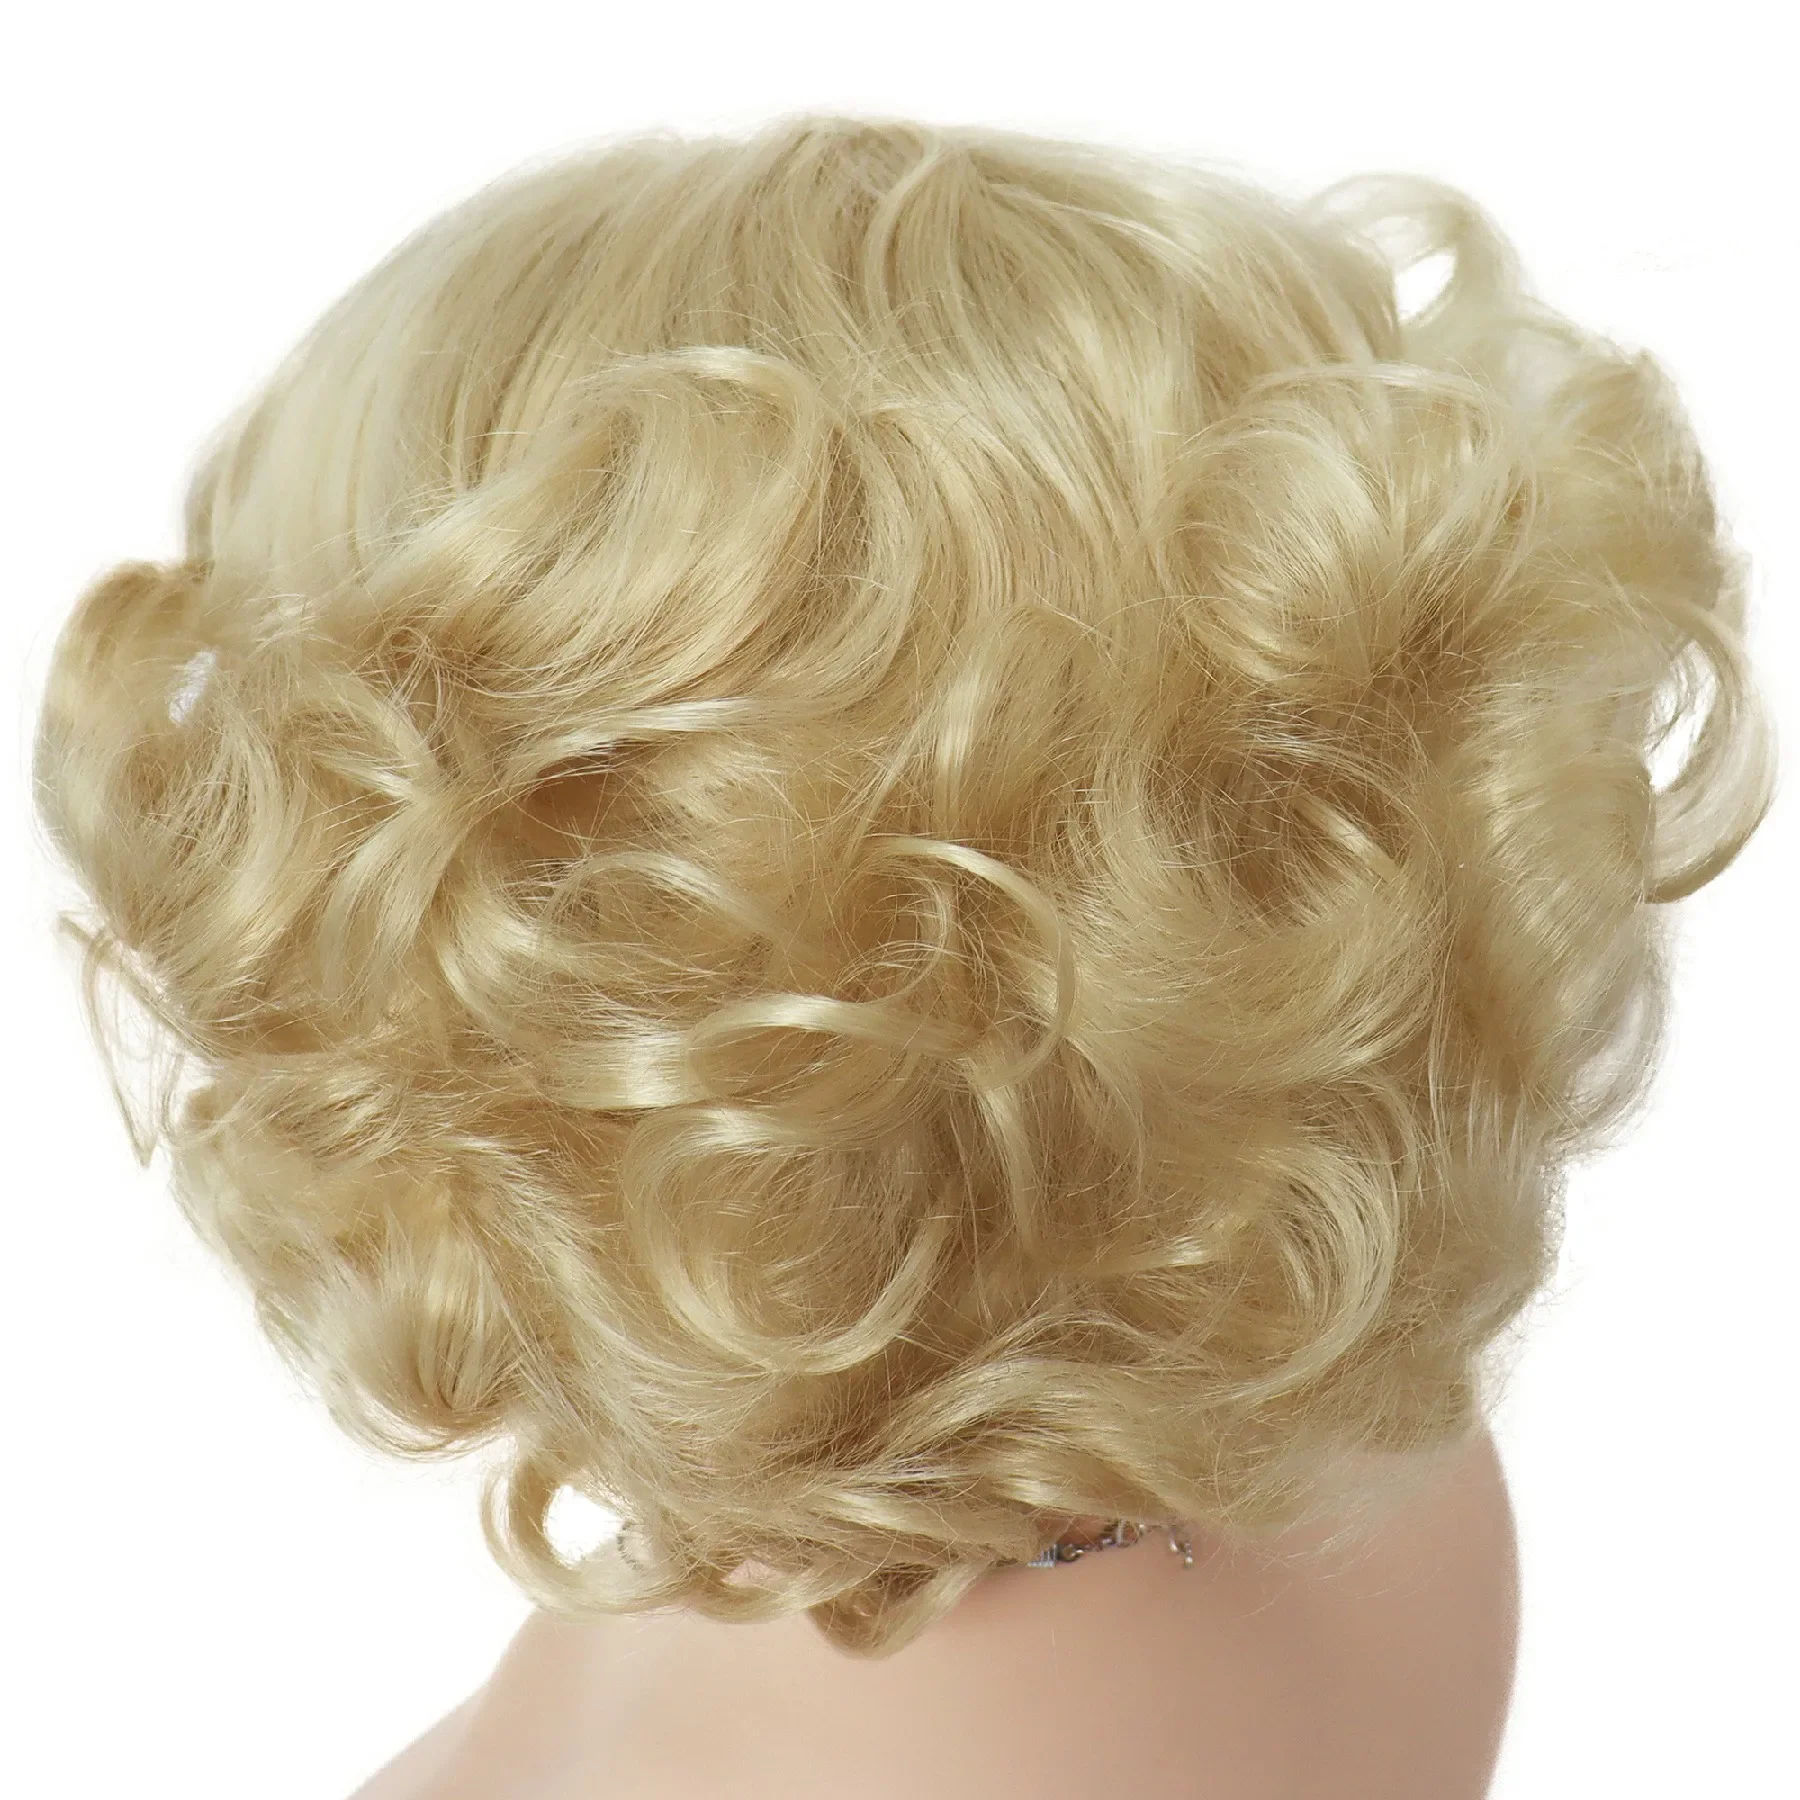 Gim egil synthetische Cosplay Perücke kurzes lockiges Haar platin blonde Perücken für weiße Frauen flauschige Locken Flip 60er Jahre Gatsby Frisur Perücken